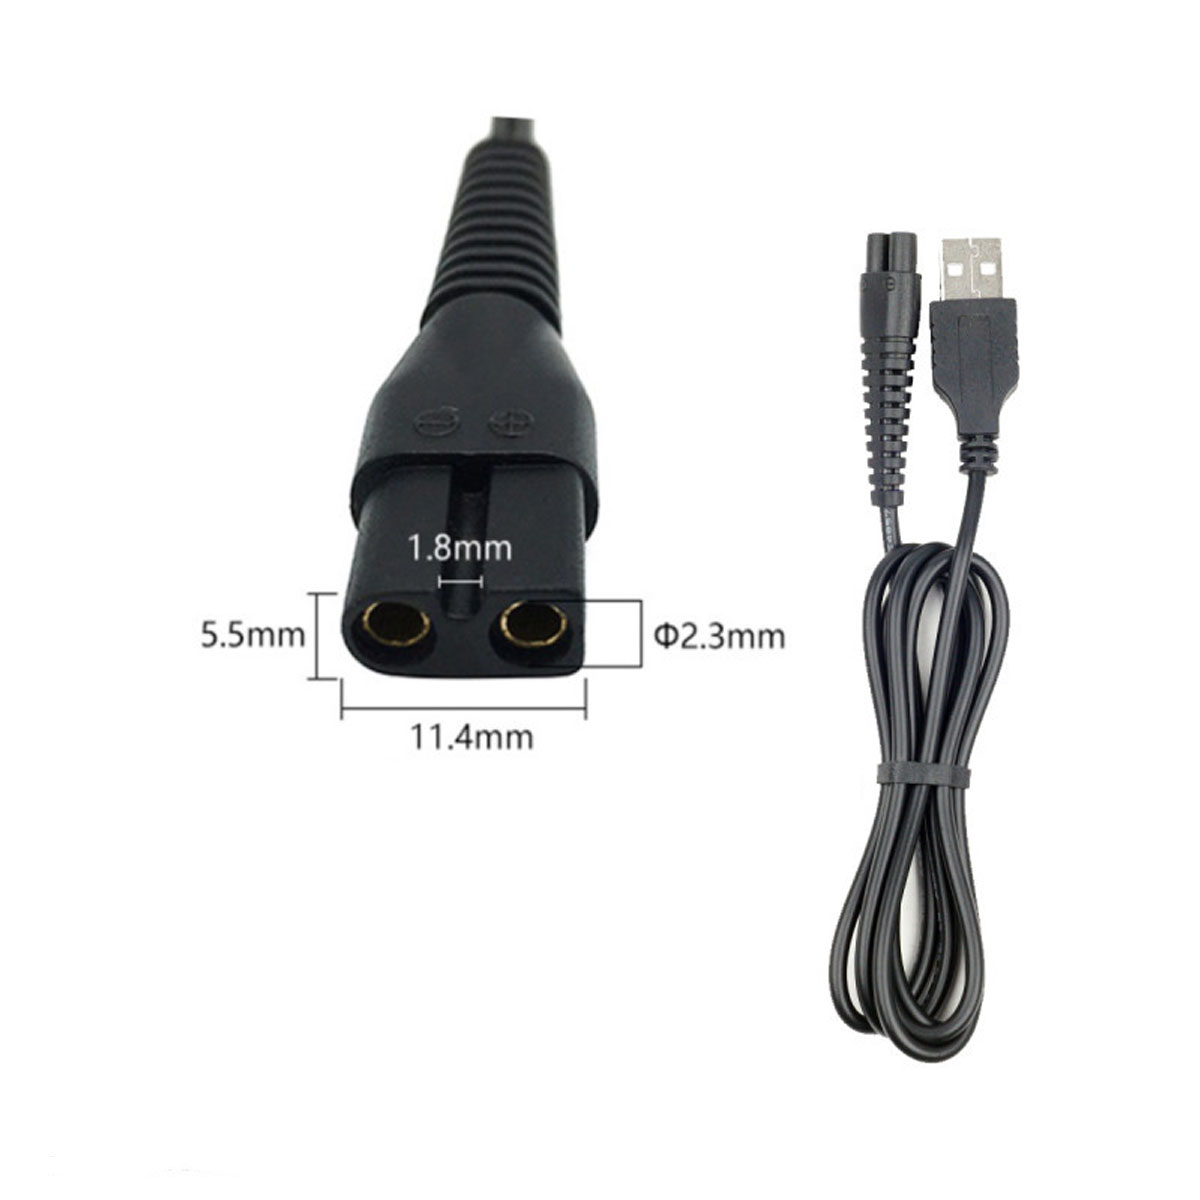 Кабель USB DL45 для зарядки электробритв, длина 1 метр, цвет черный (восьмерка)